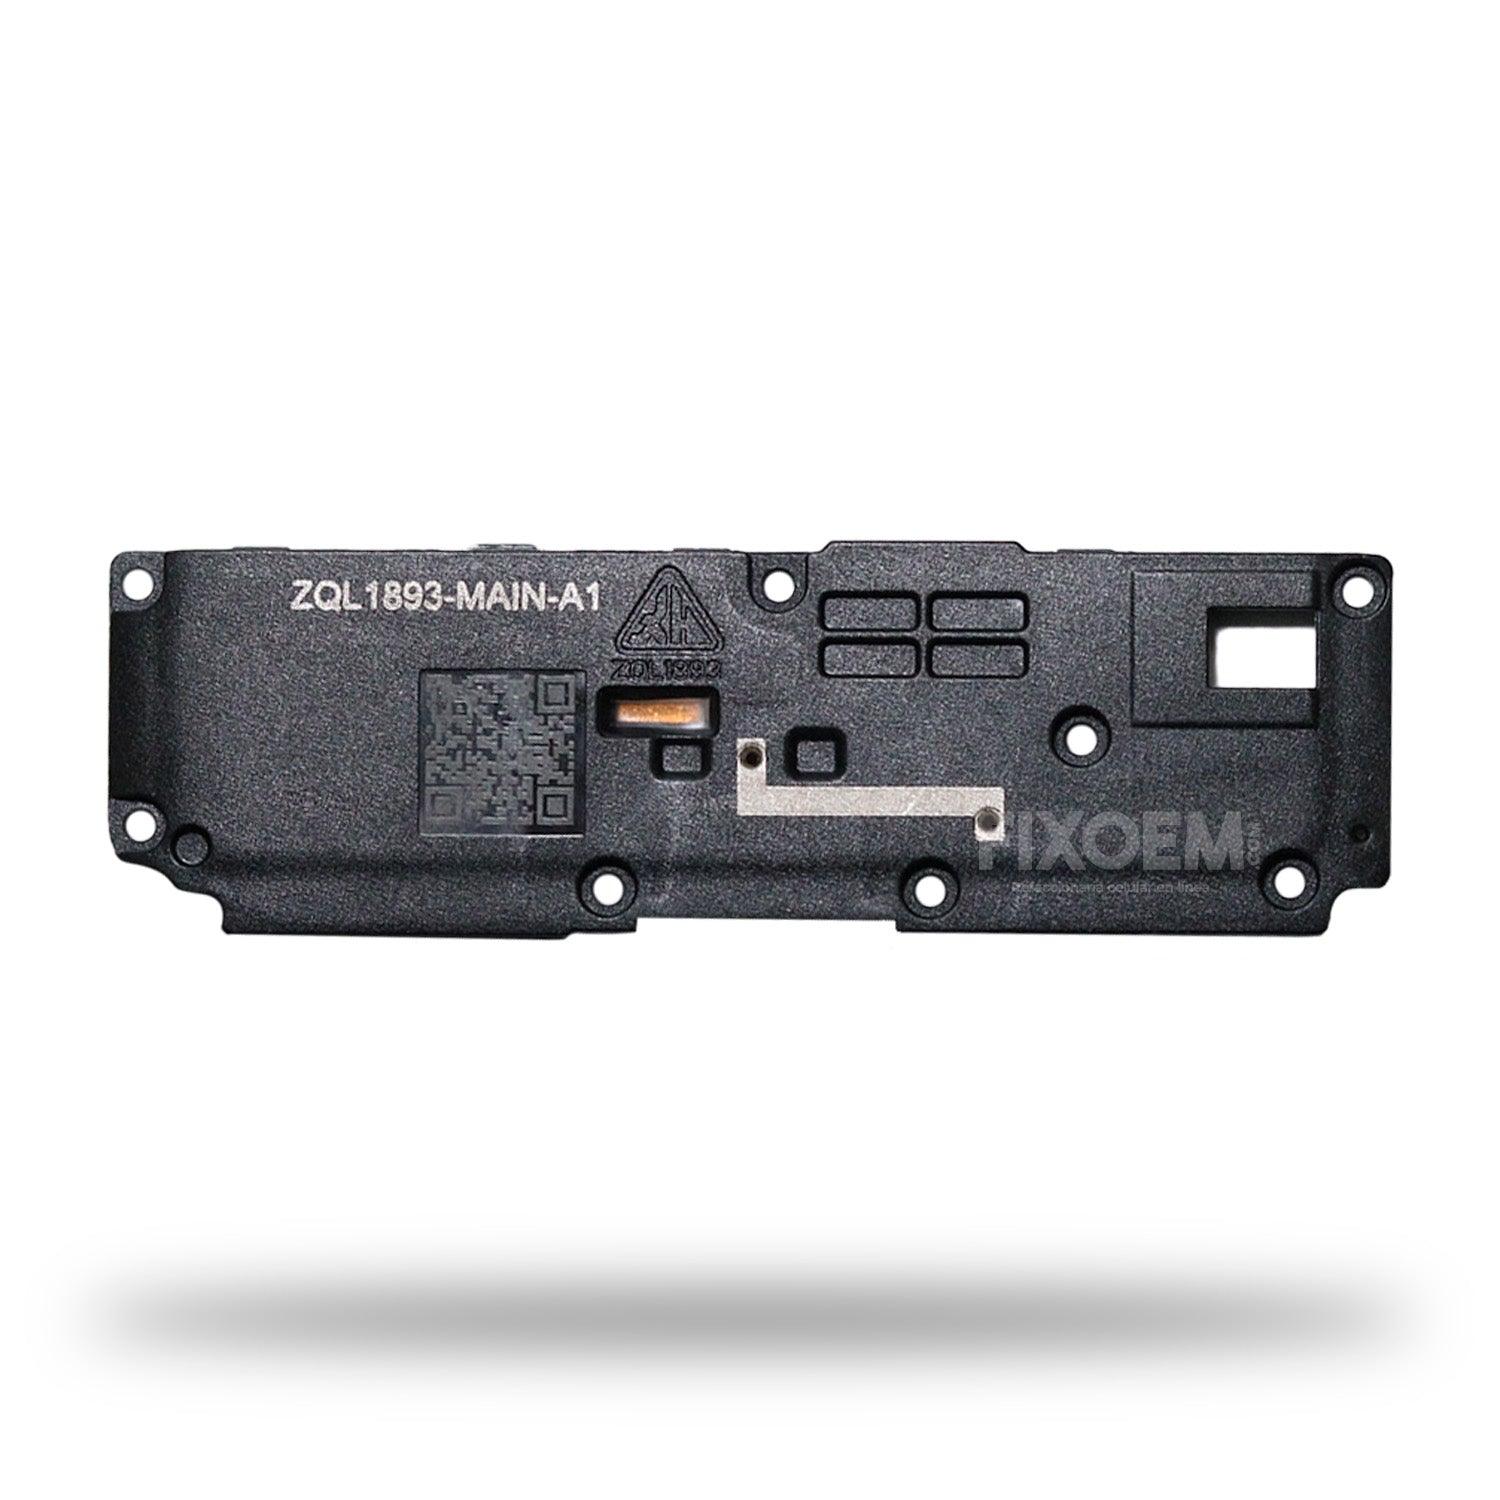 Altavoz Moto G8 Xt2045-1 a solo $ 60.00 Refaccion y puestos celulares, refurbish y microelectronica.- FixOEM